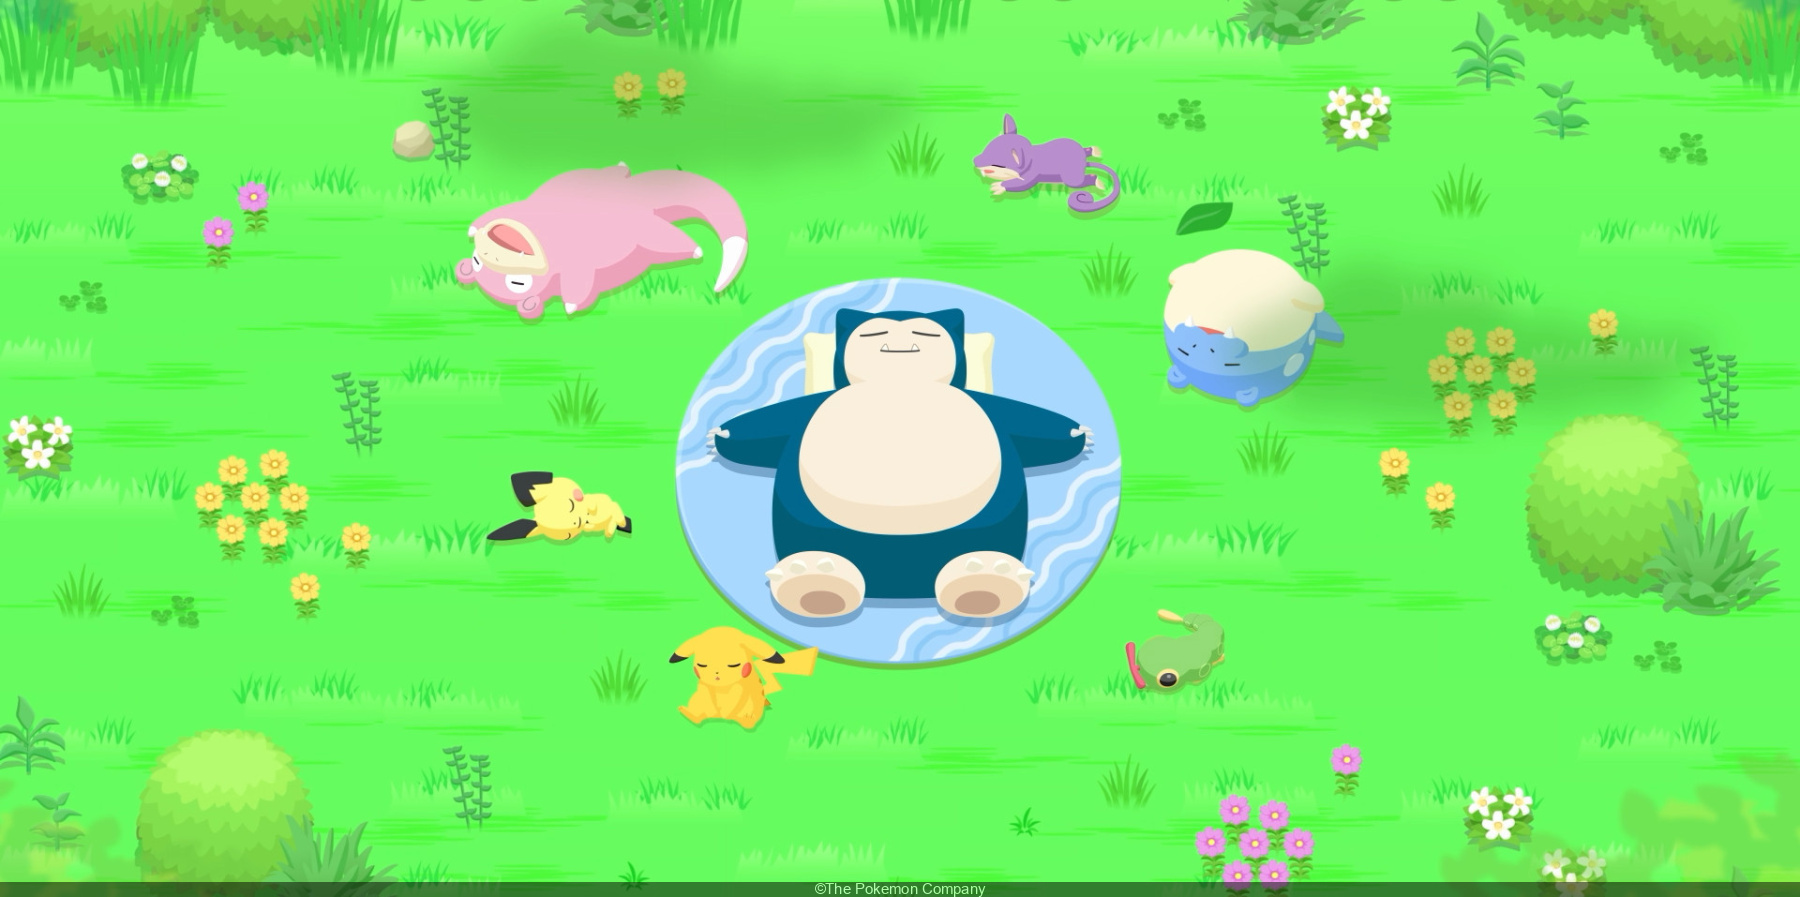 Pokémon Sleep: our preview of the sleep-tracking app that captures Pokémon  